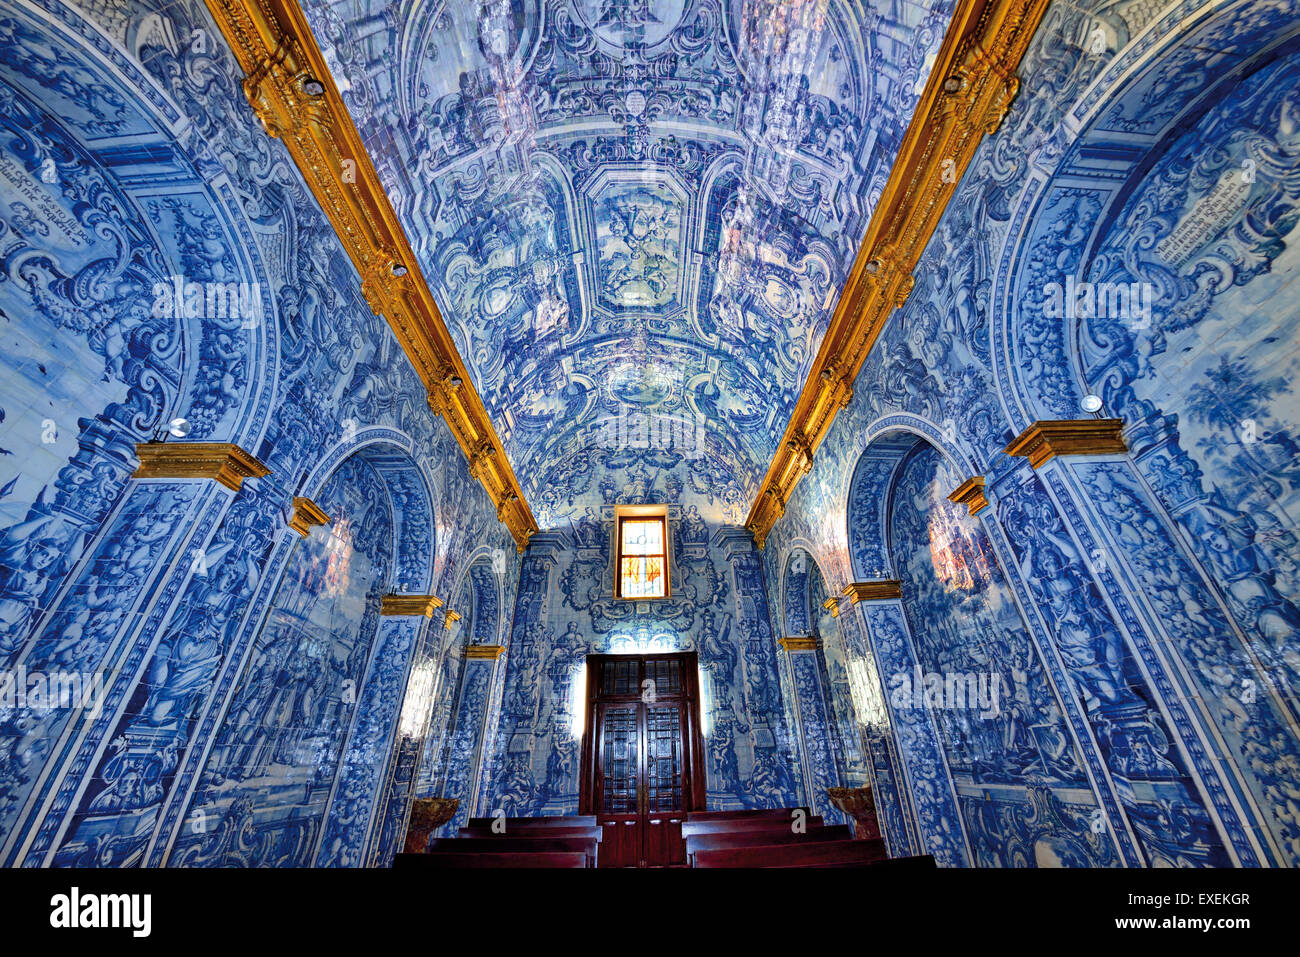 Portugal, Algarve: Amazing historic tiles in the medieval church of Sao Lourenco in Almansil Stock Photo